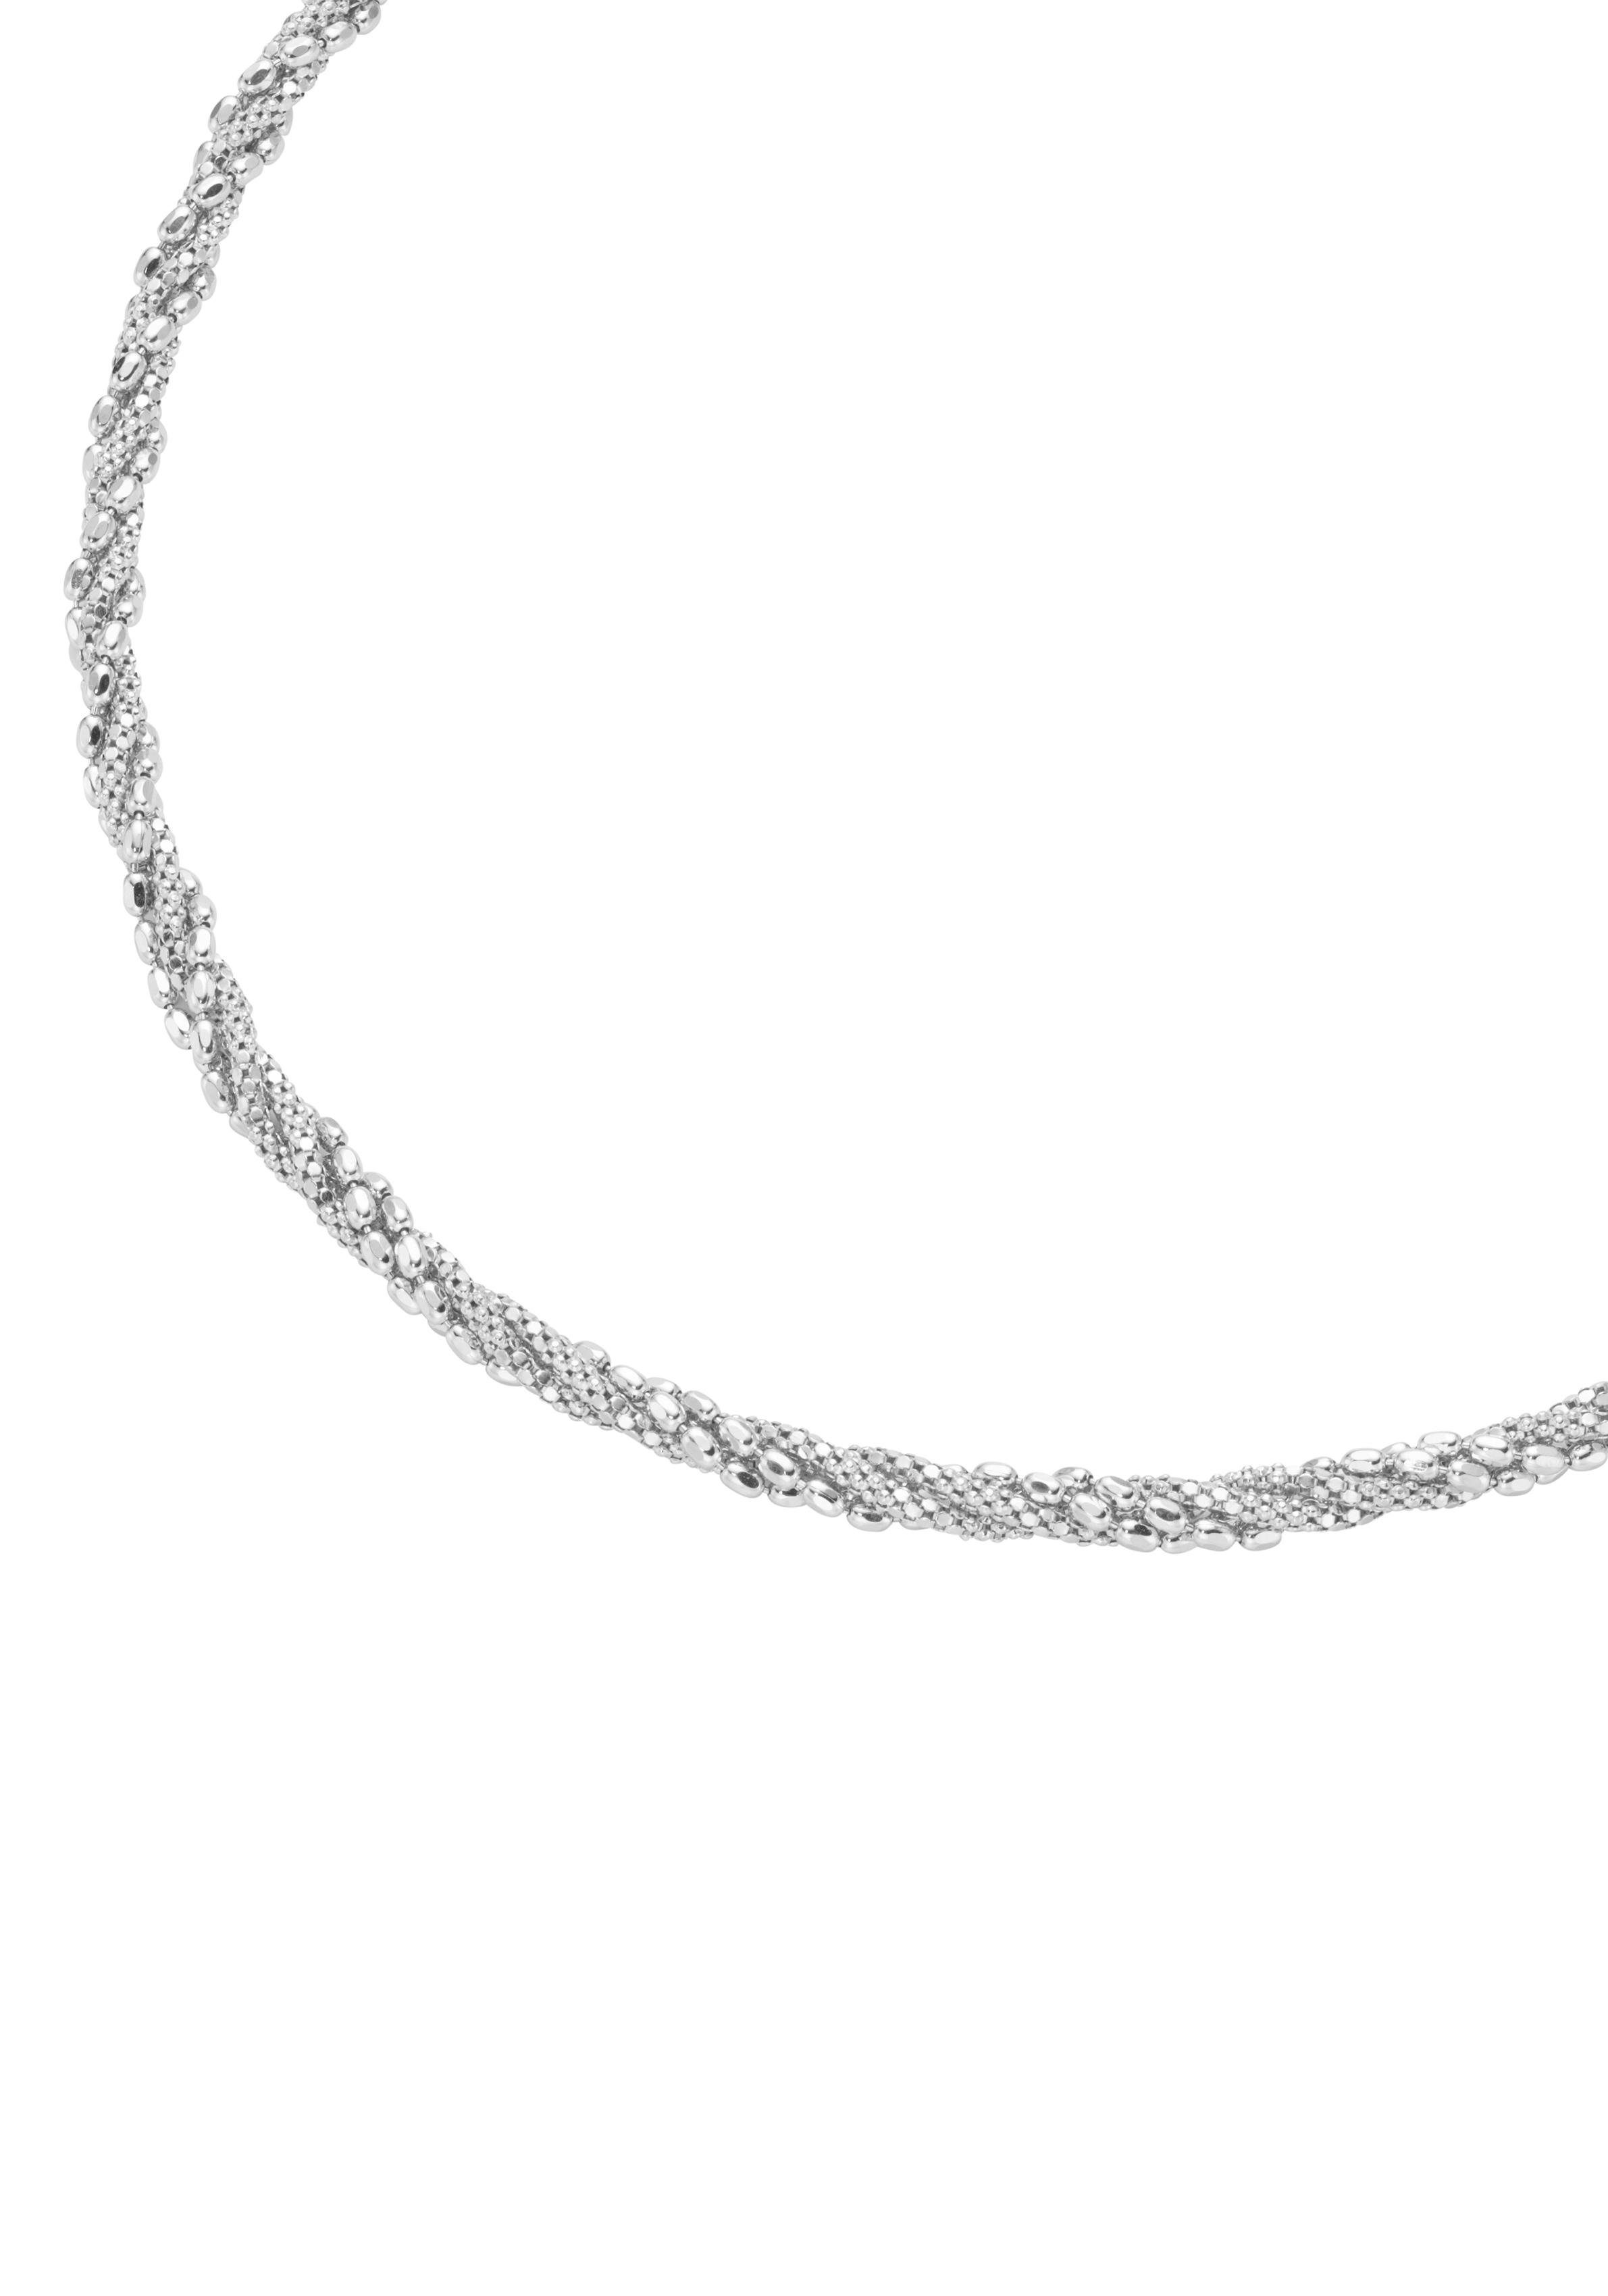 Firetti Silberkette Schmuck Geschenk, rhodiniert, teilweise diamantiert,  massiv, zu Kleid, Shirt, Jeans, Sneaker! Anlass Geburtstag Weihnachten